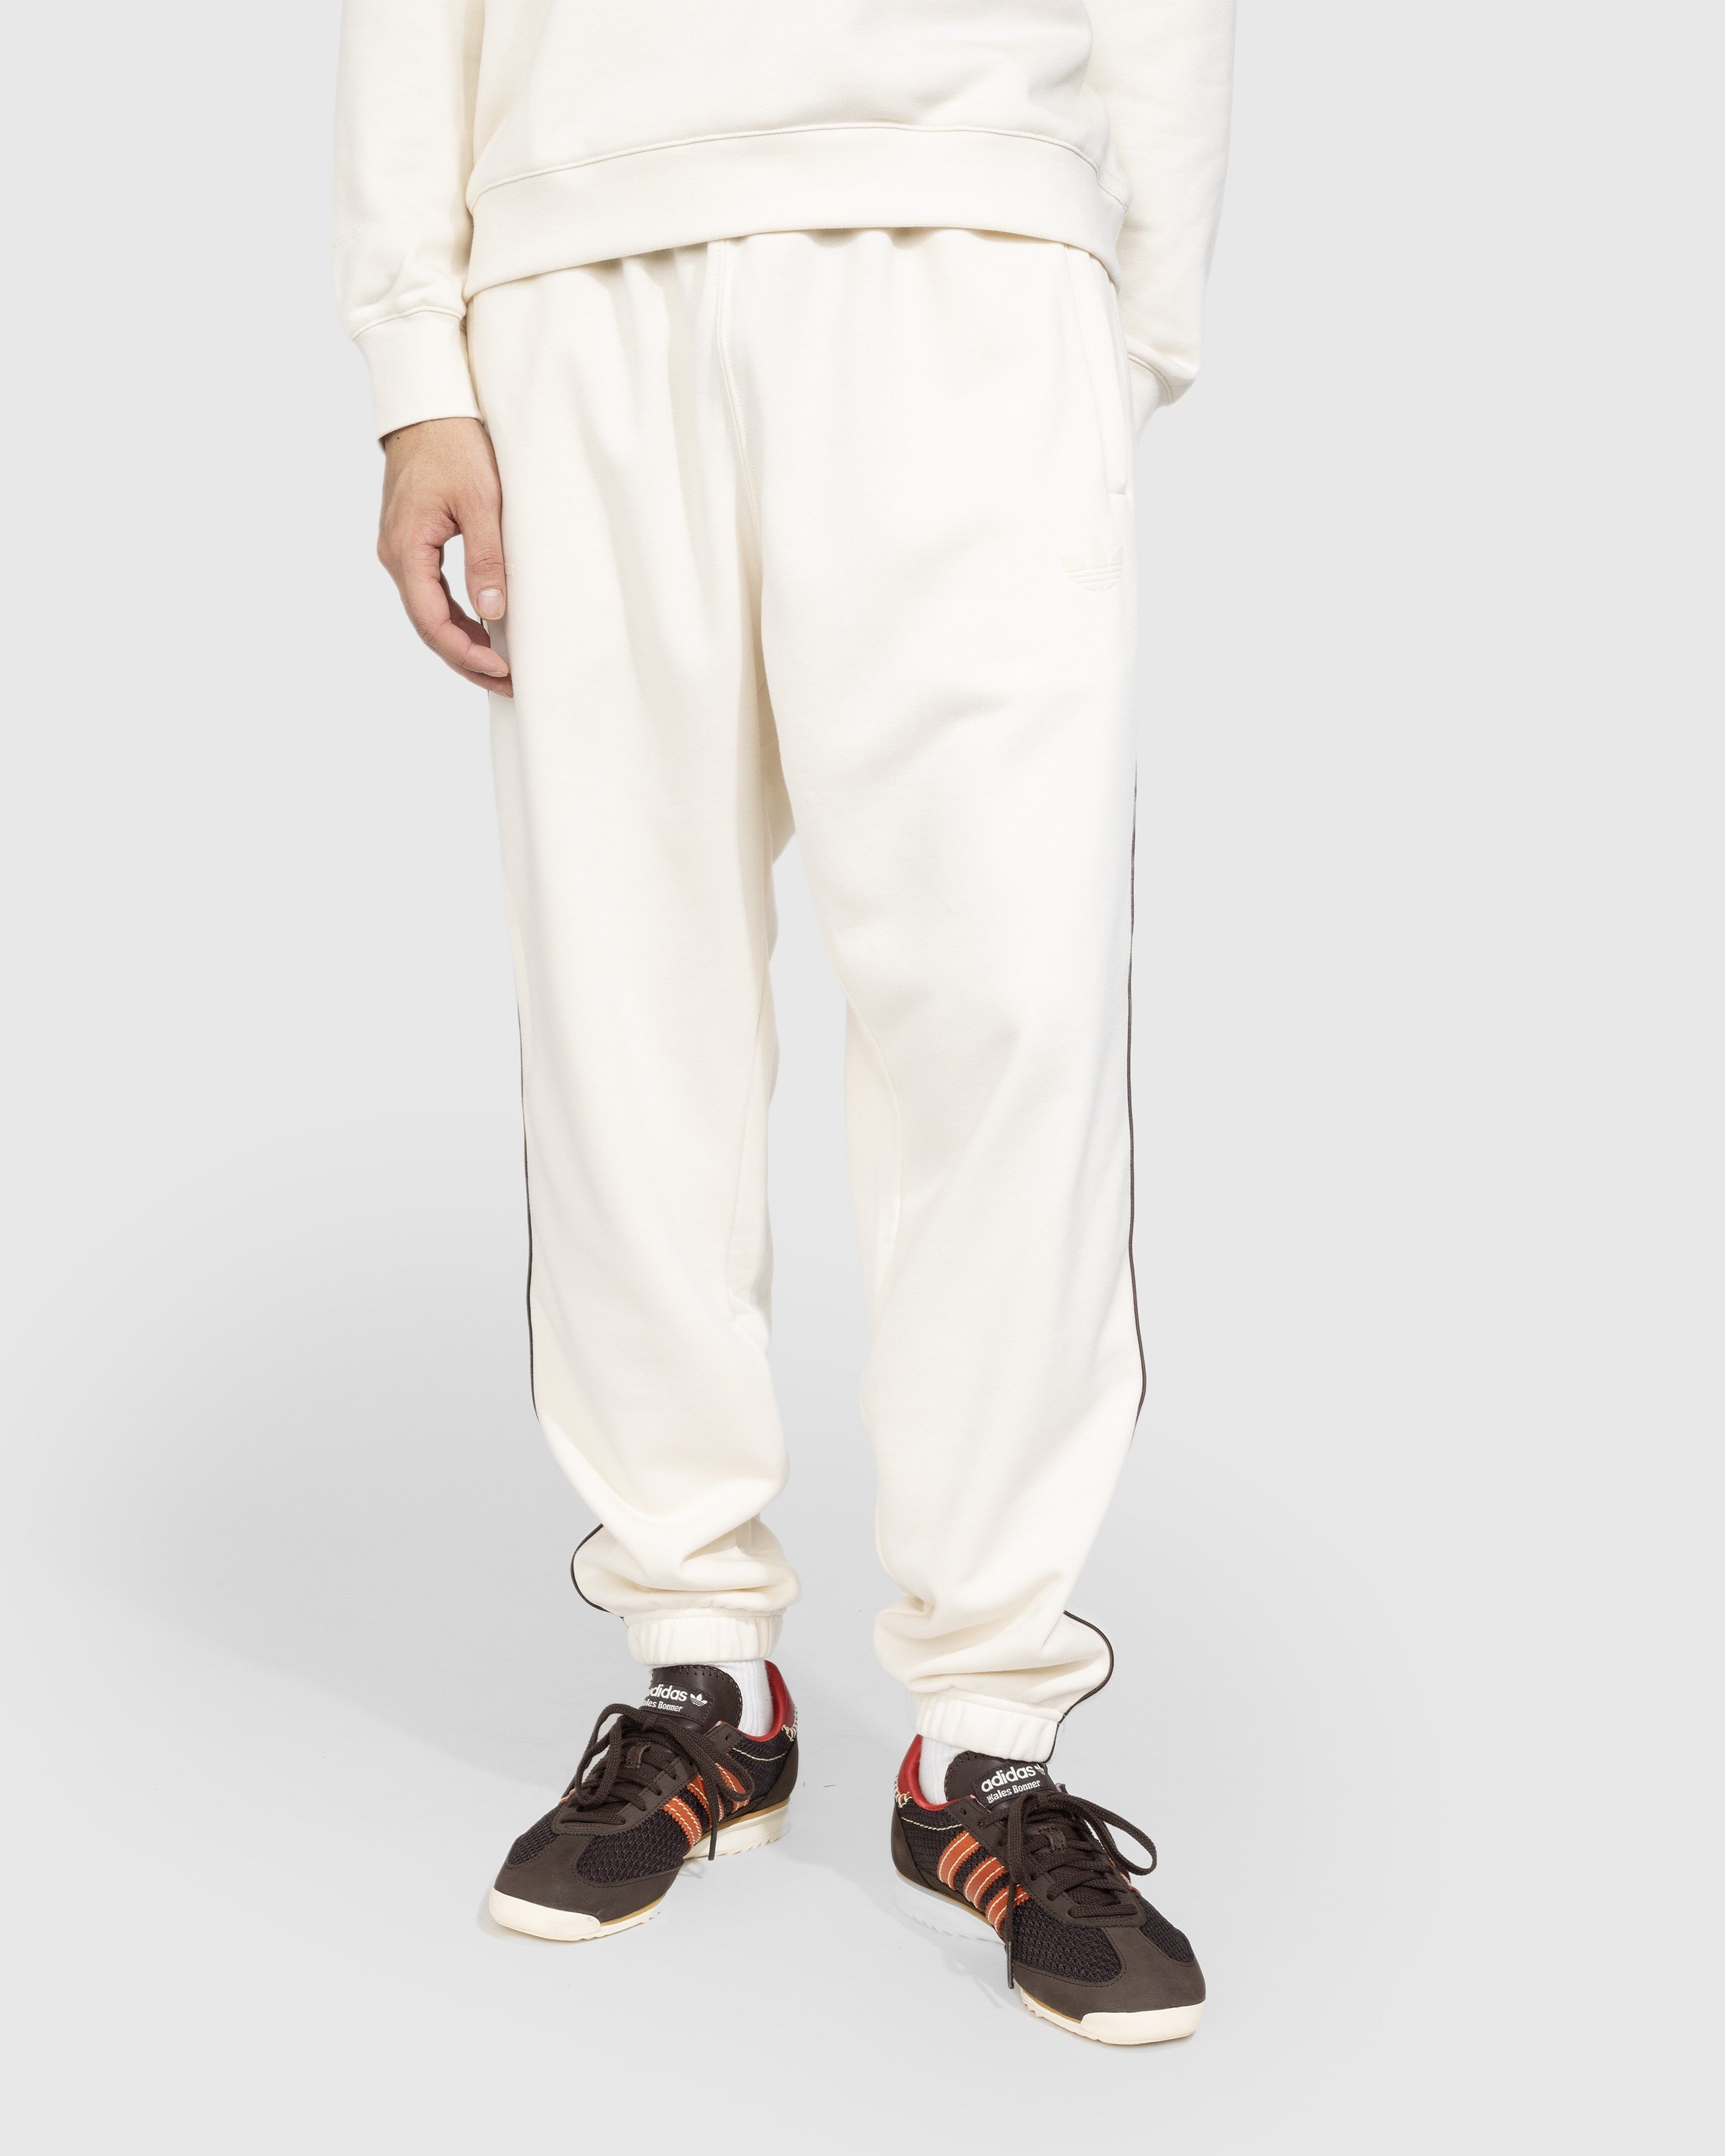 Adidas x Wales Bonner - Sweatpants Wonder White - Clothing - Beige - Image 2